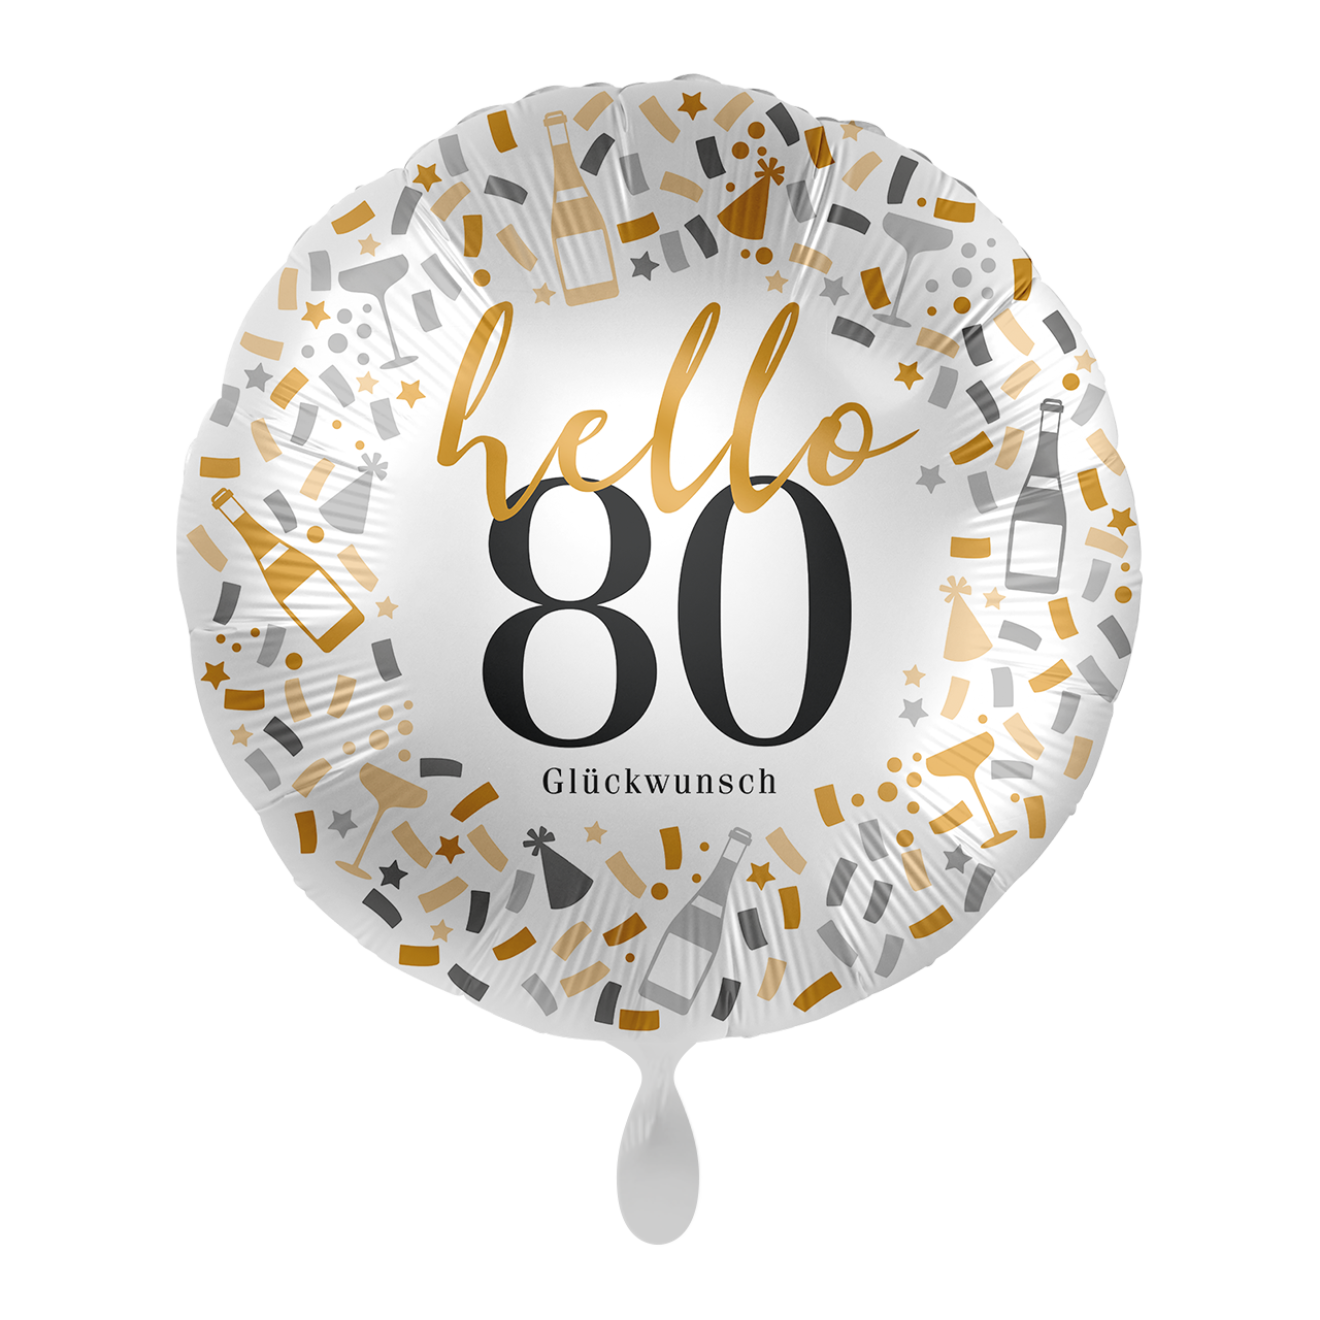 1 Balloon - Hello 80 - GER